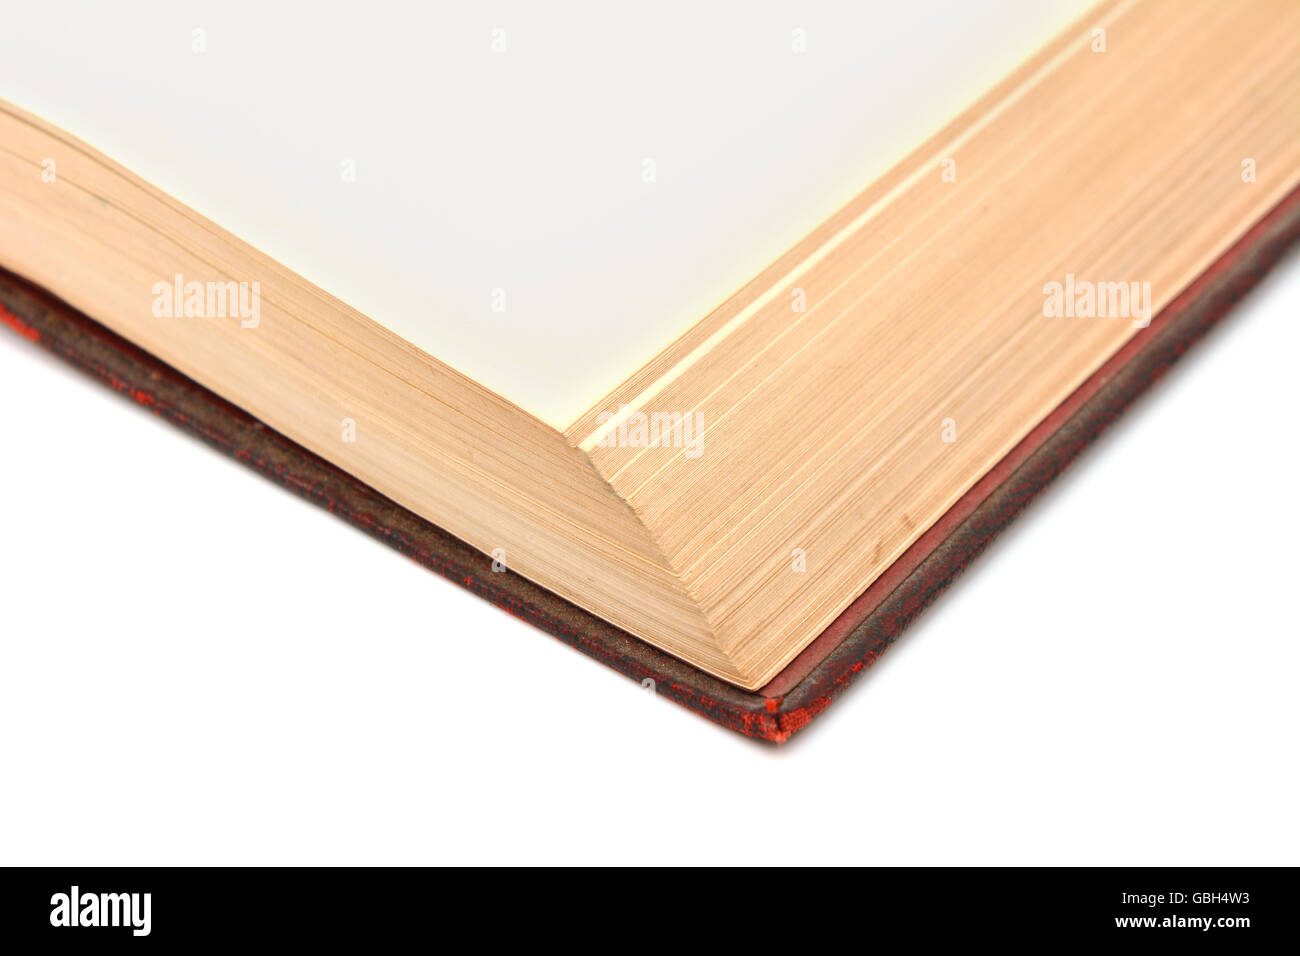 Détail d'angle d'une page blanche dans un livre relié en très bon état, sur un fond blanc Banque D'Images